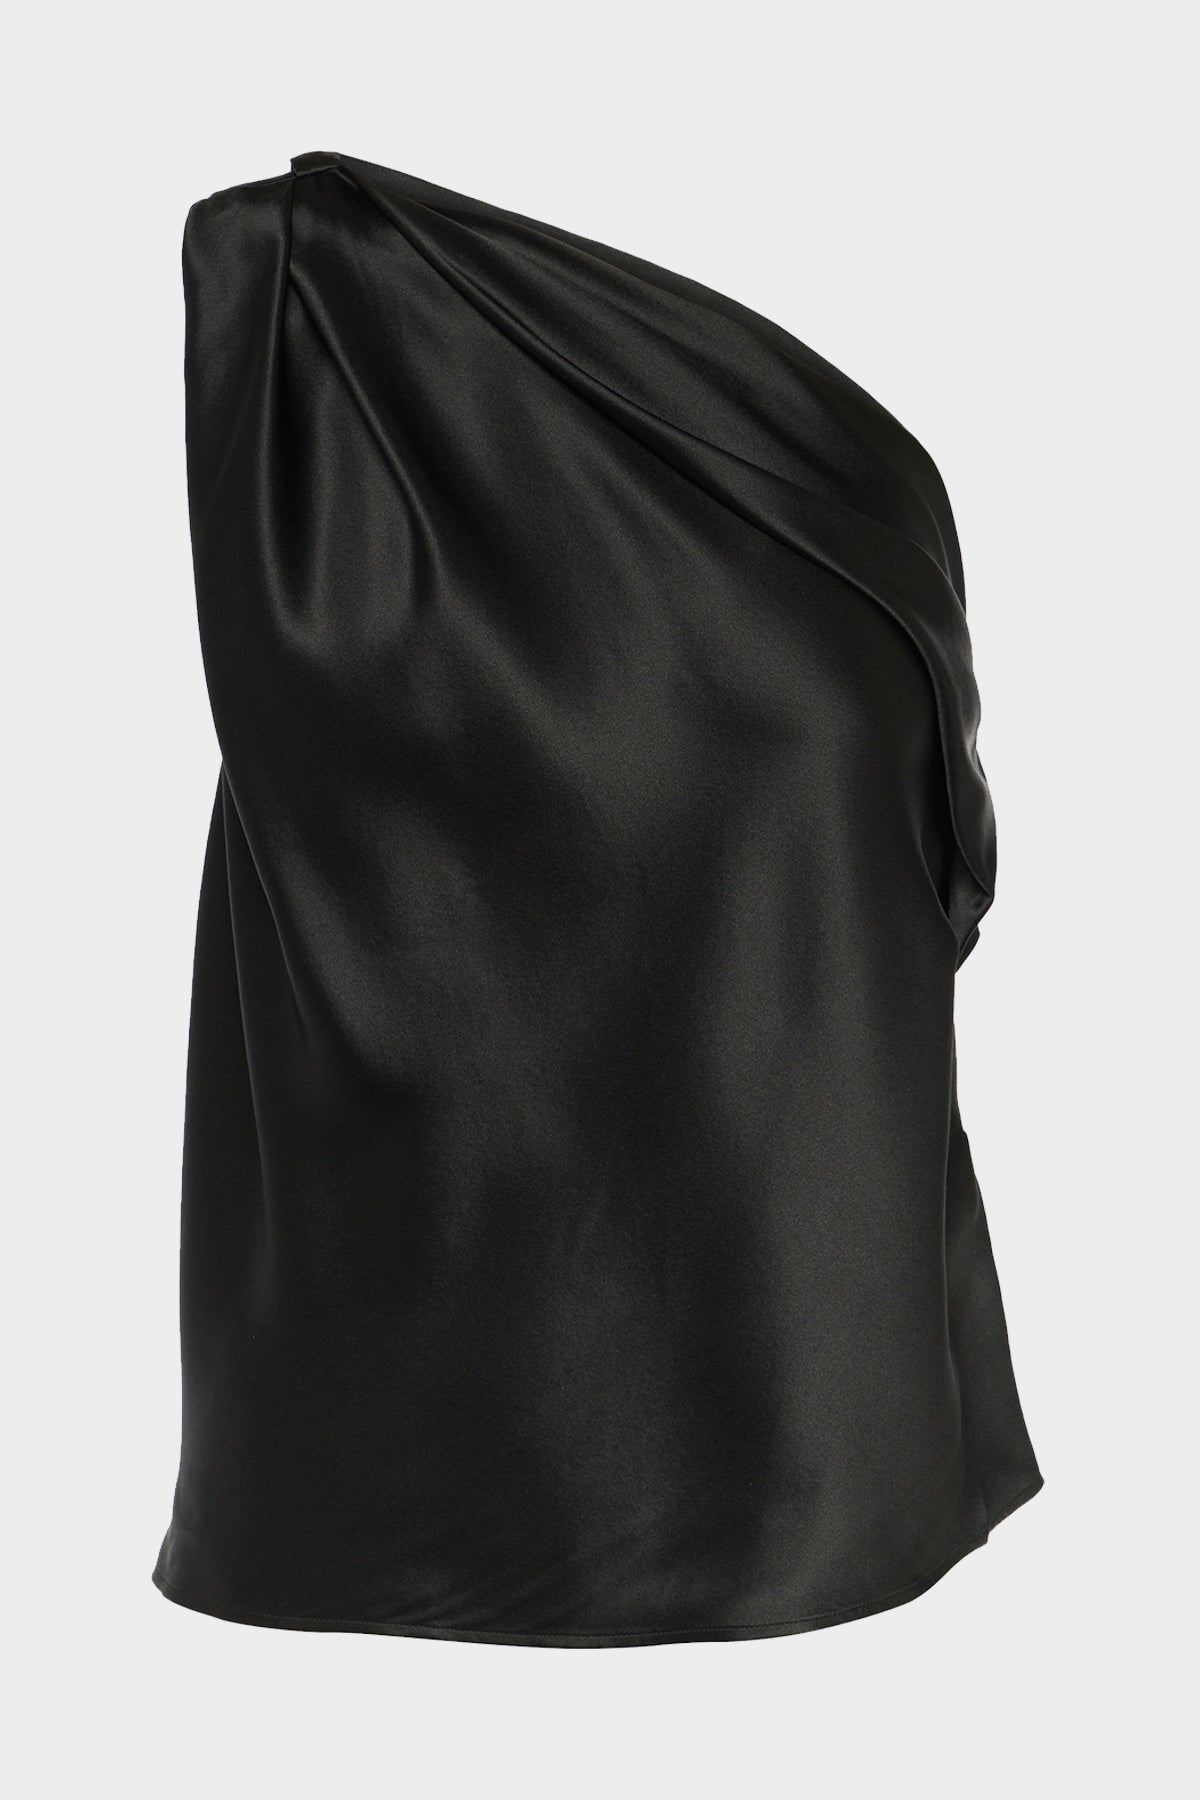 One Shoulder Draped Top in Black - shop-olivia.com